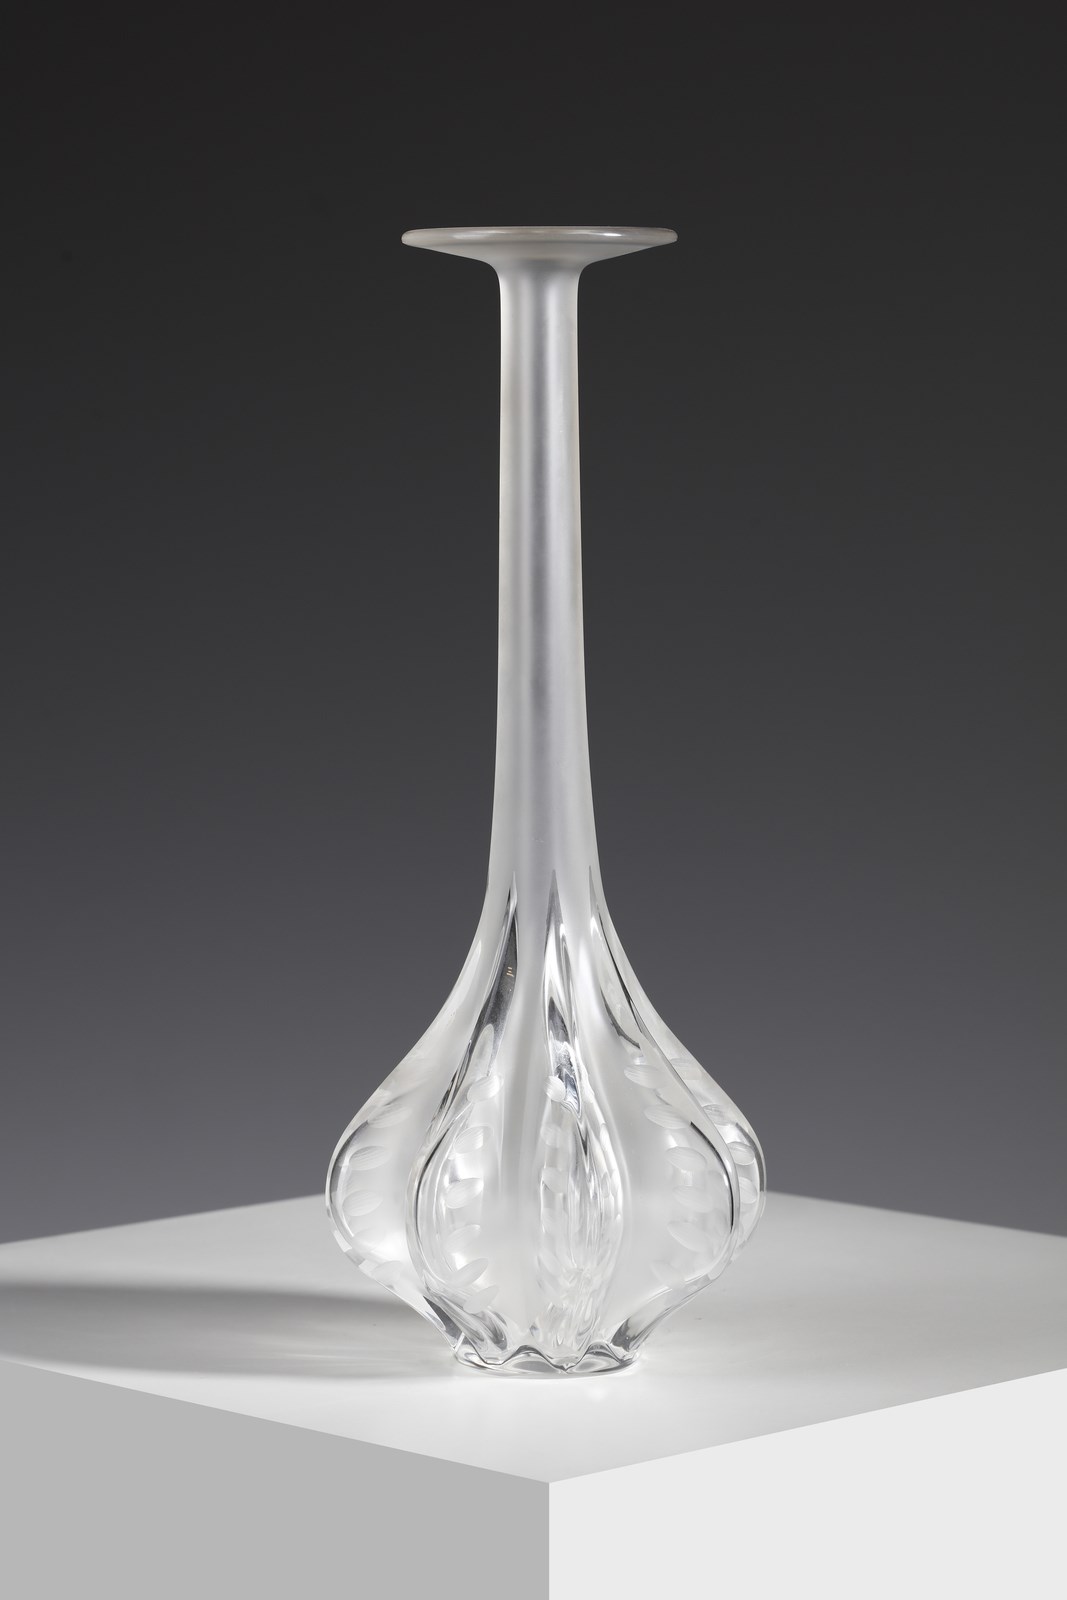 Vaso della seria Marie Claude in cristallo soffiato a stampo con decoro floreale stilizzato, base a bulbo con collo alto (Lalique )